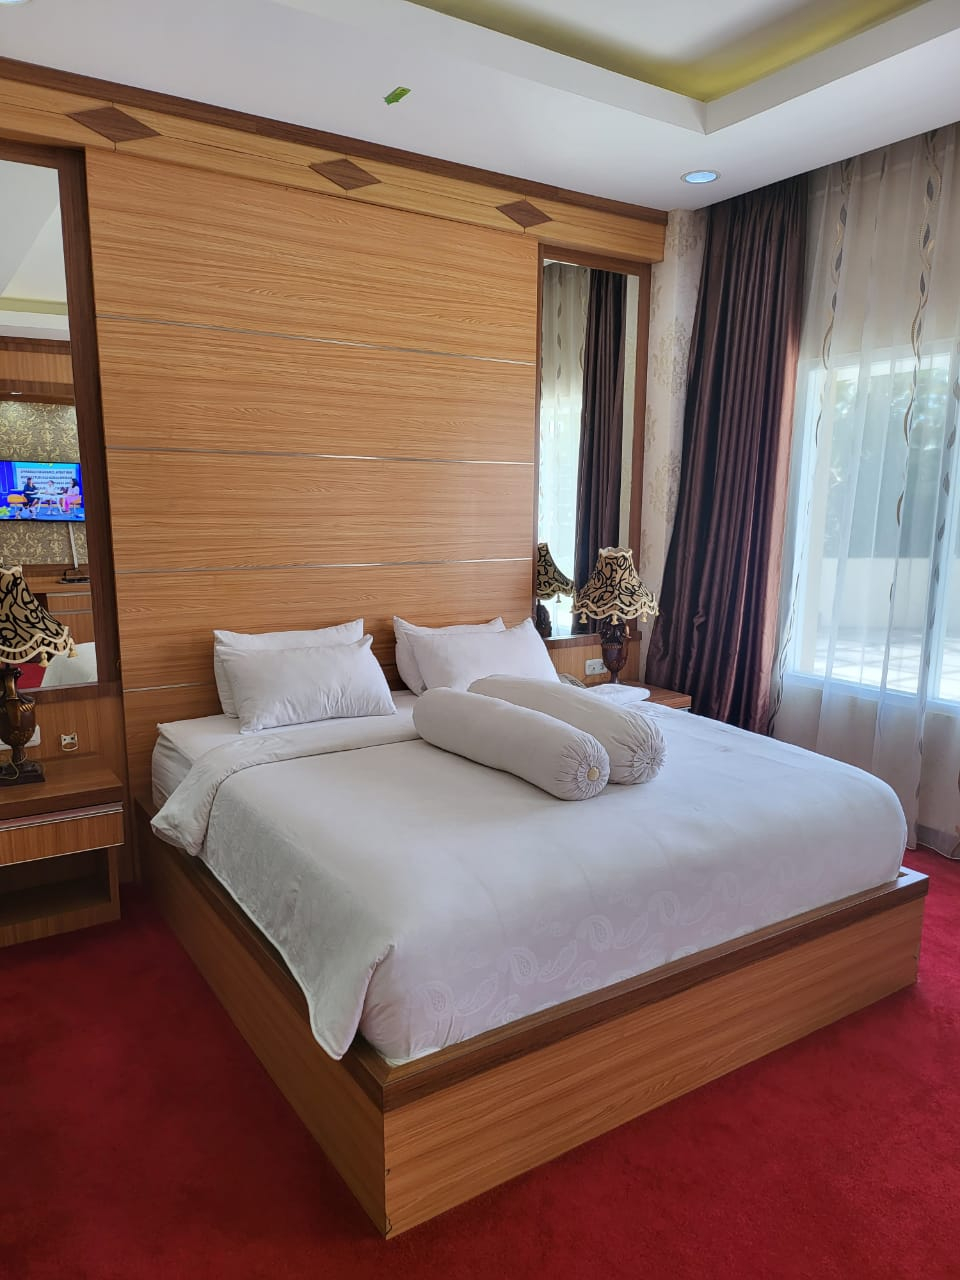 Bedroom 2, Grand Buana Lestari Hotel, Padang Pariaman